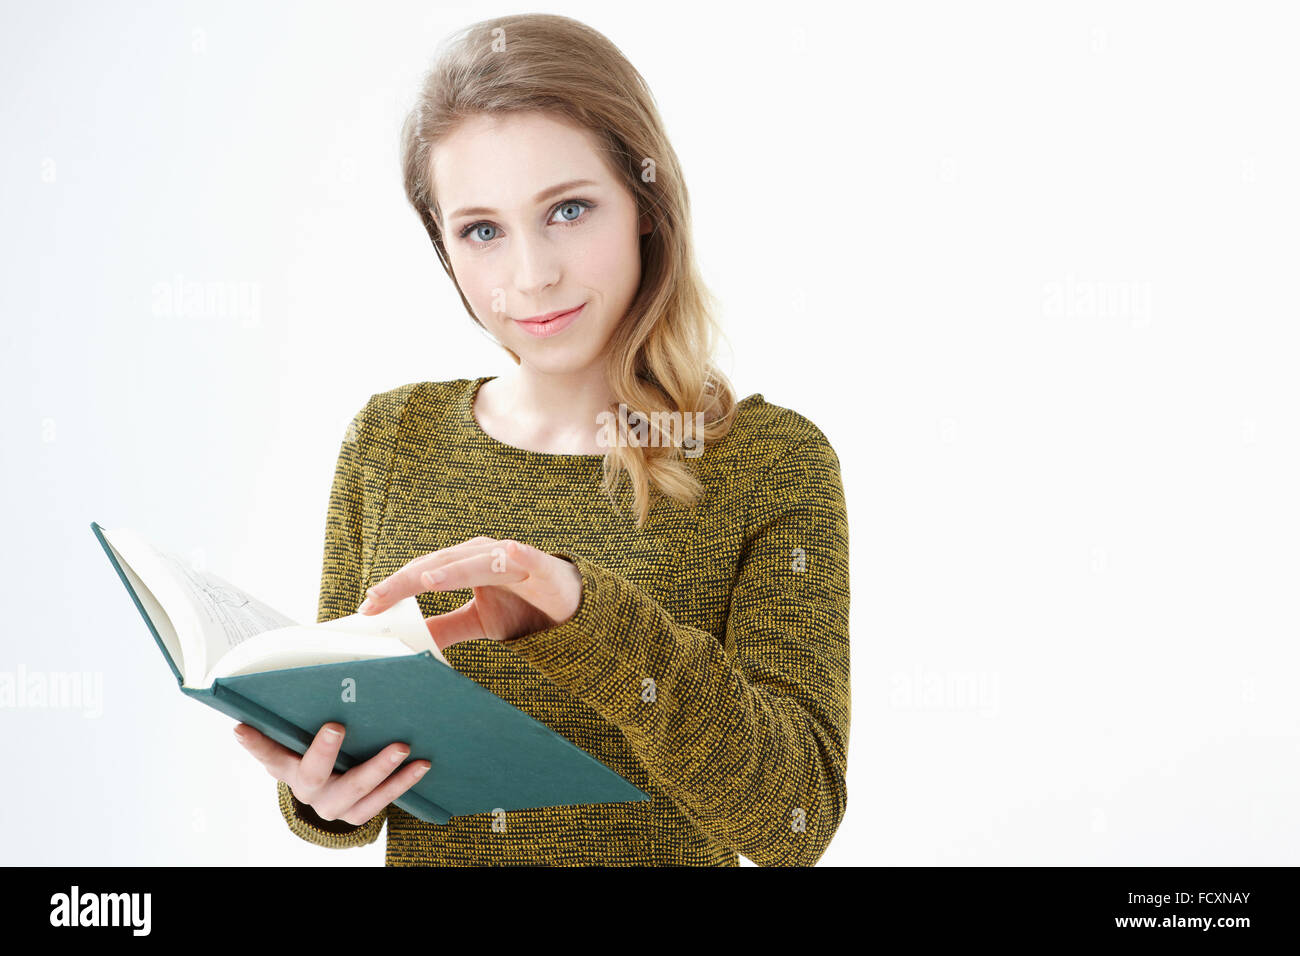 Ritratto di giovane donna sorridente tiene un libro aperto con lo sguardo sul lato anteriore Foto Stock